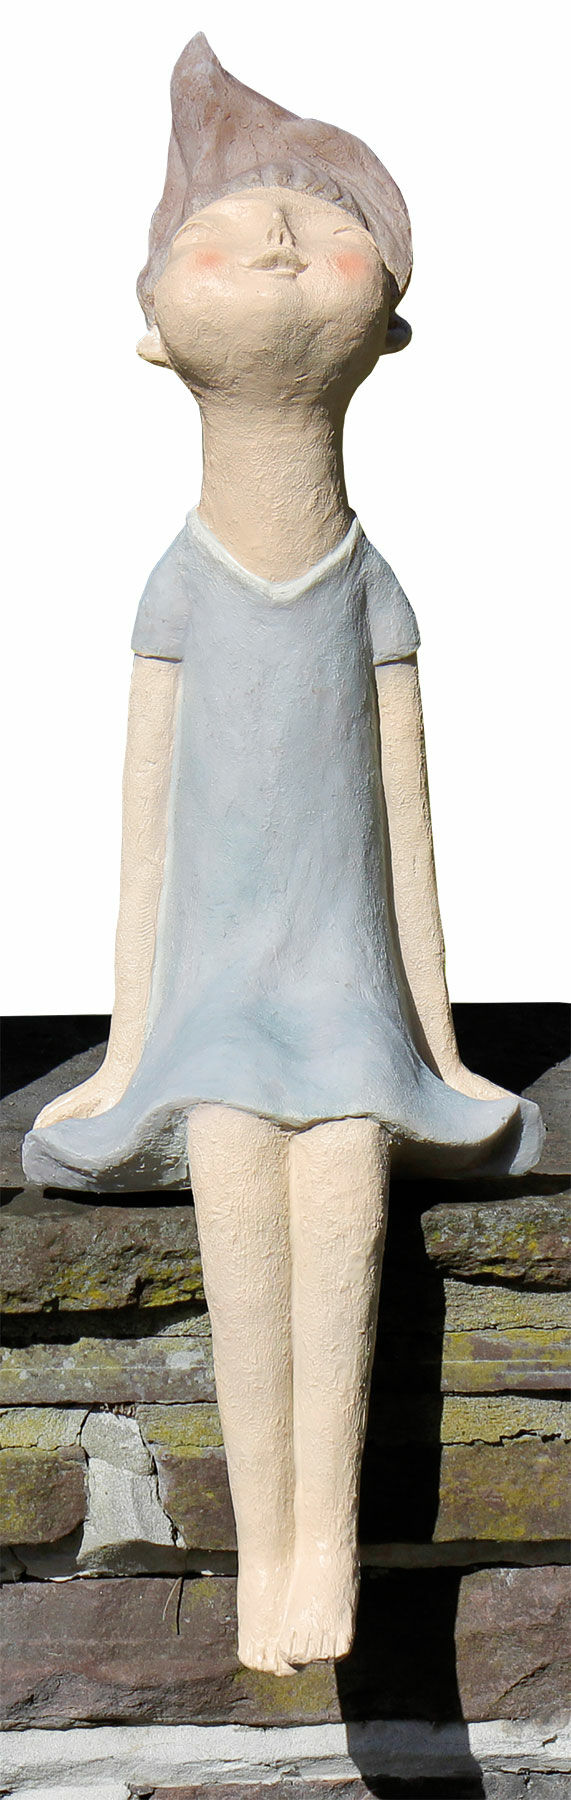 Sculpture de jardin "Shelf Sitter Girl Lucia" (fille qui s'occupe des étagères)